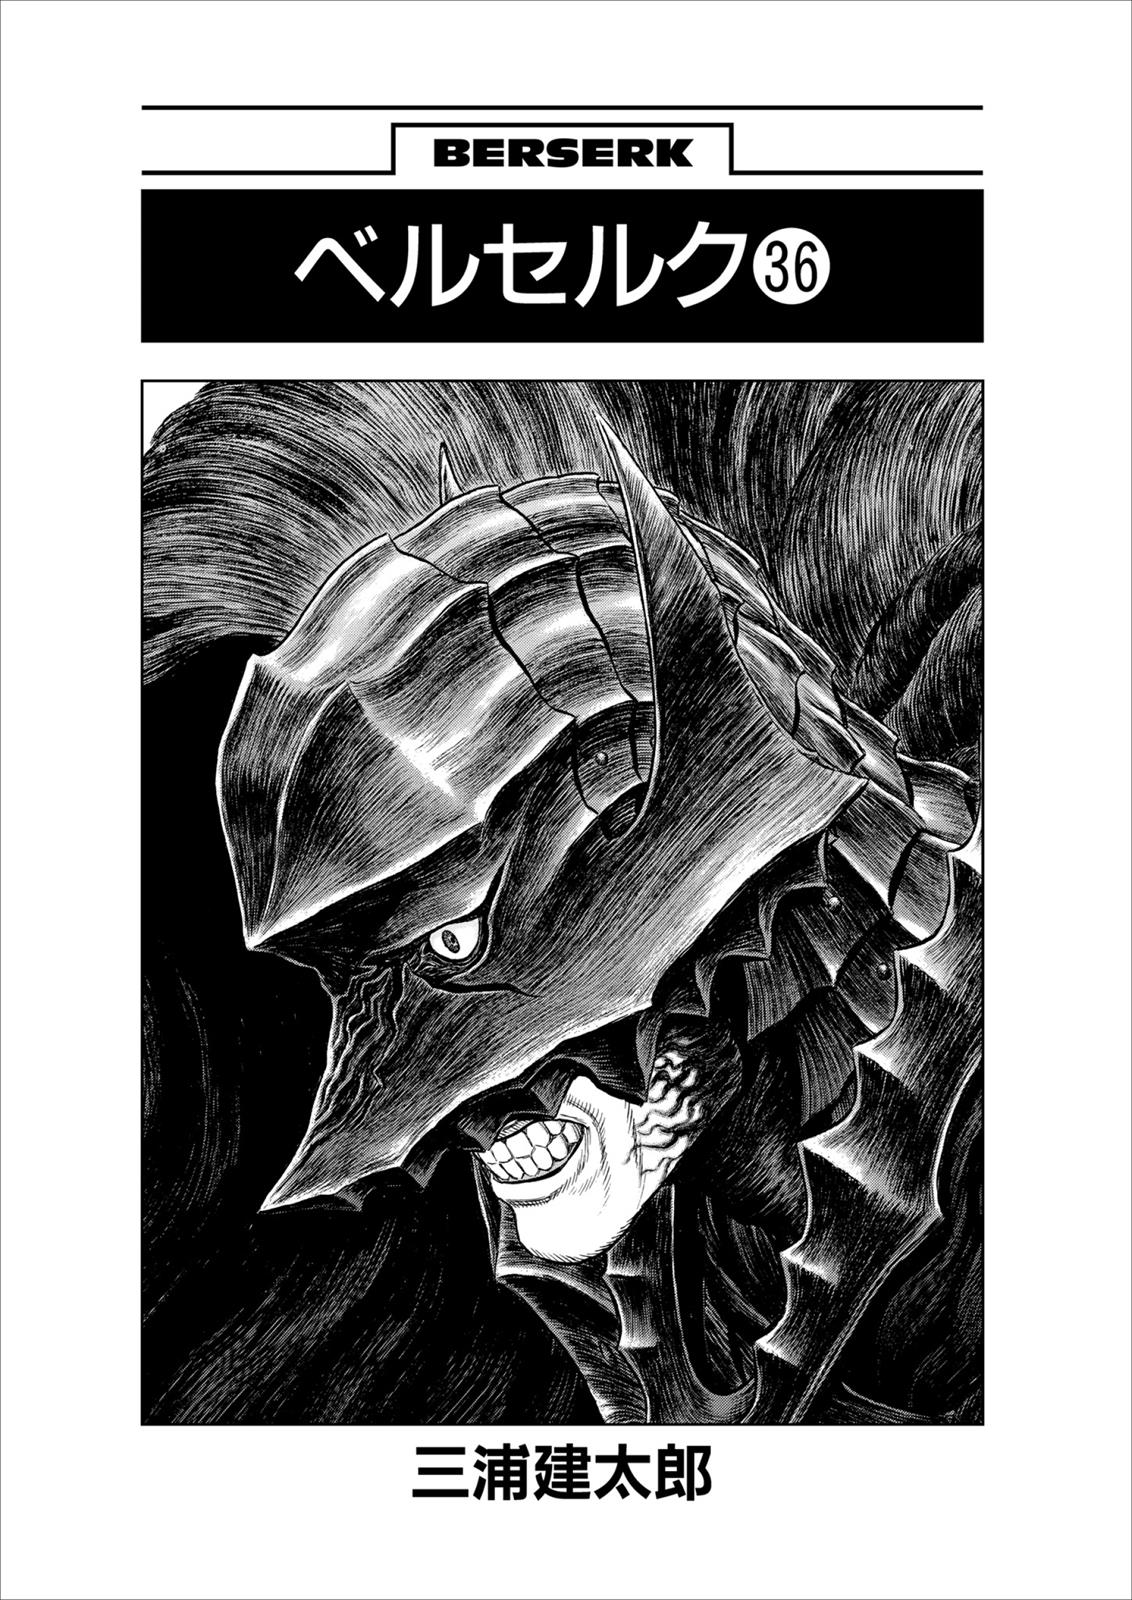 Berserk Manga Chapter 316 image 07